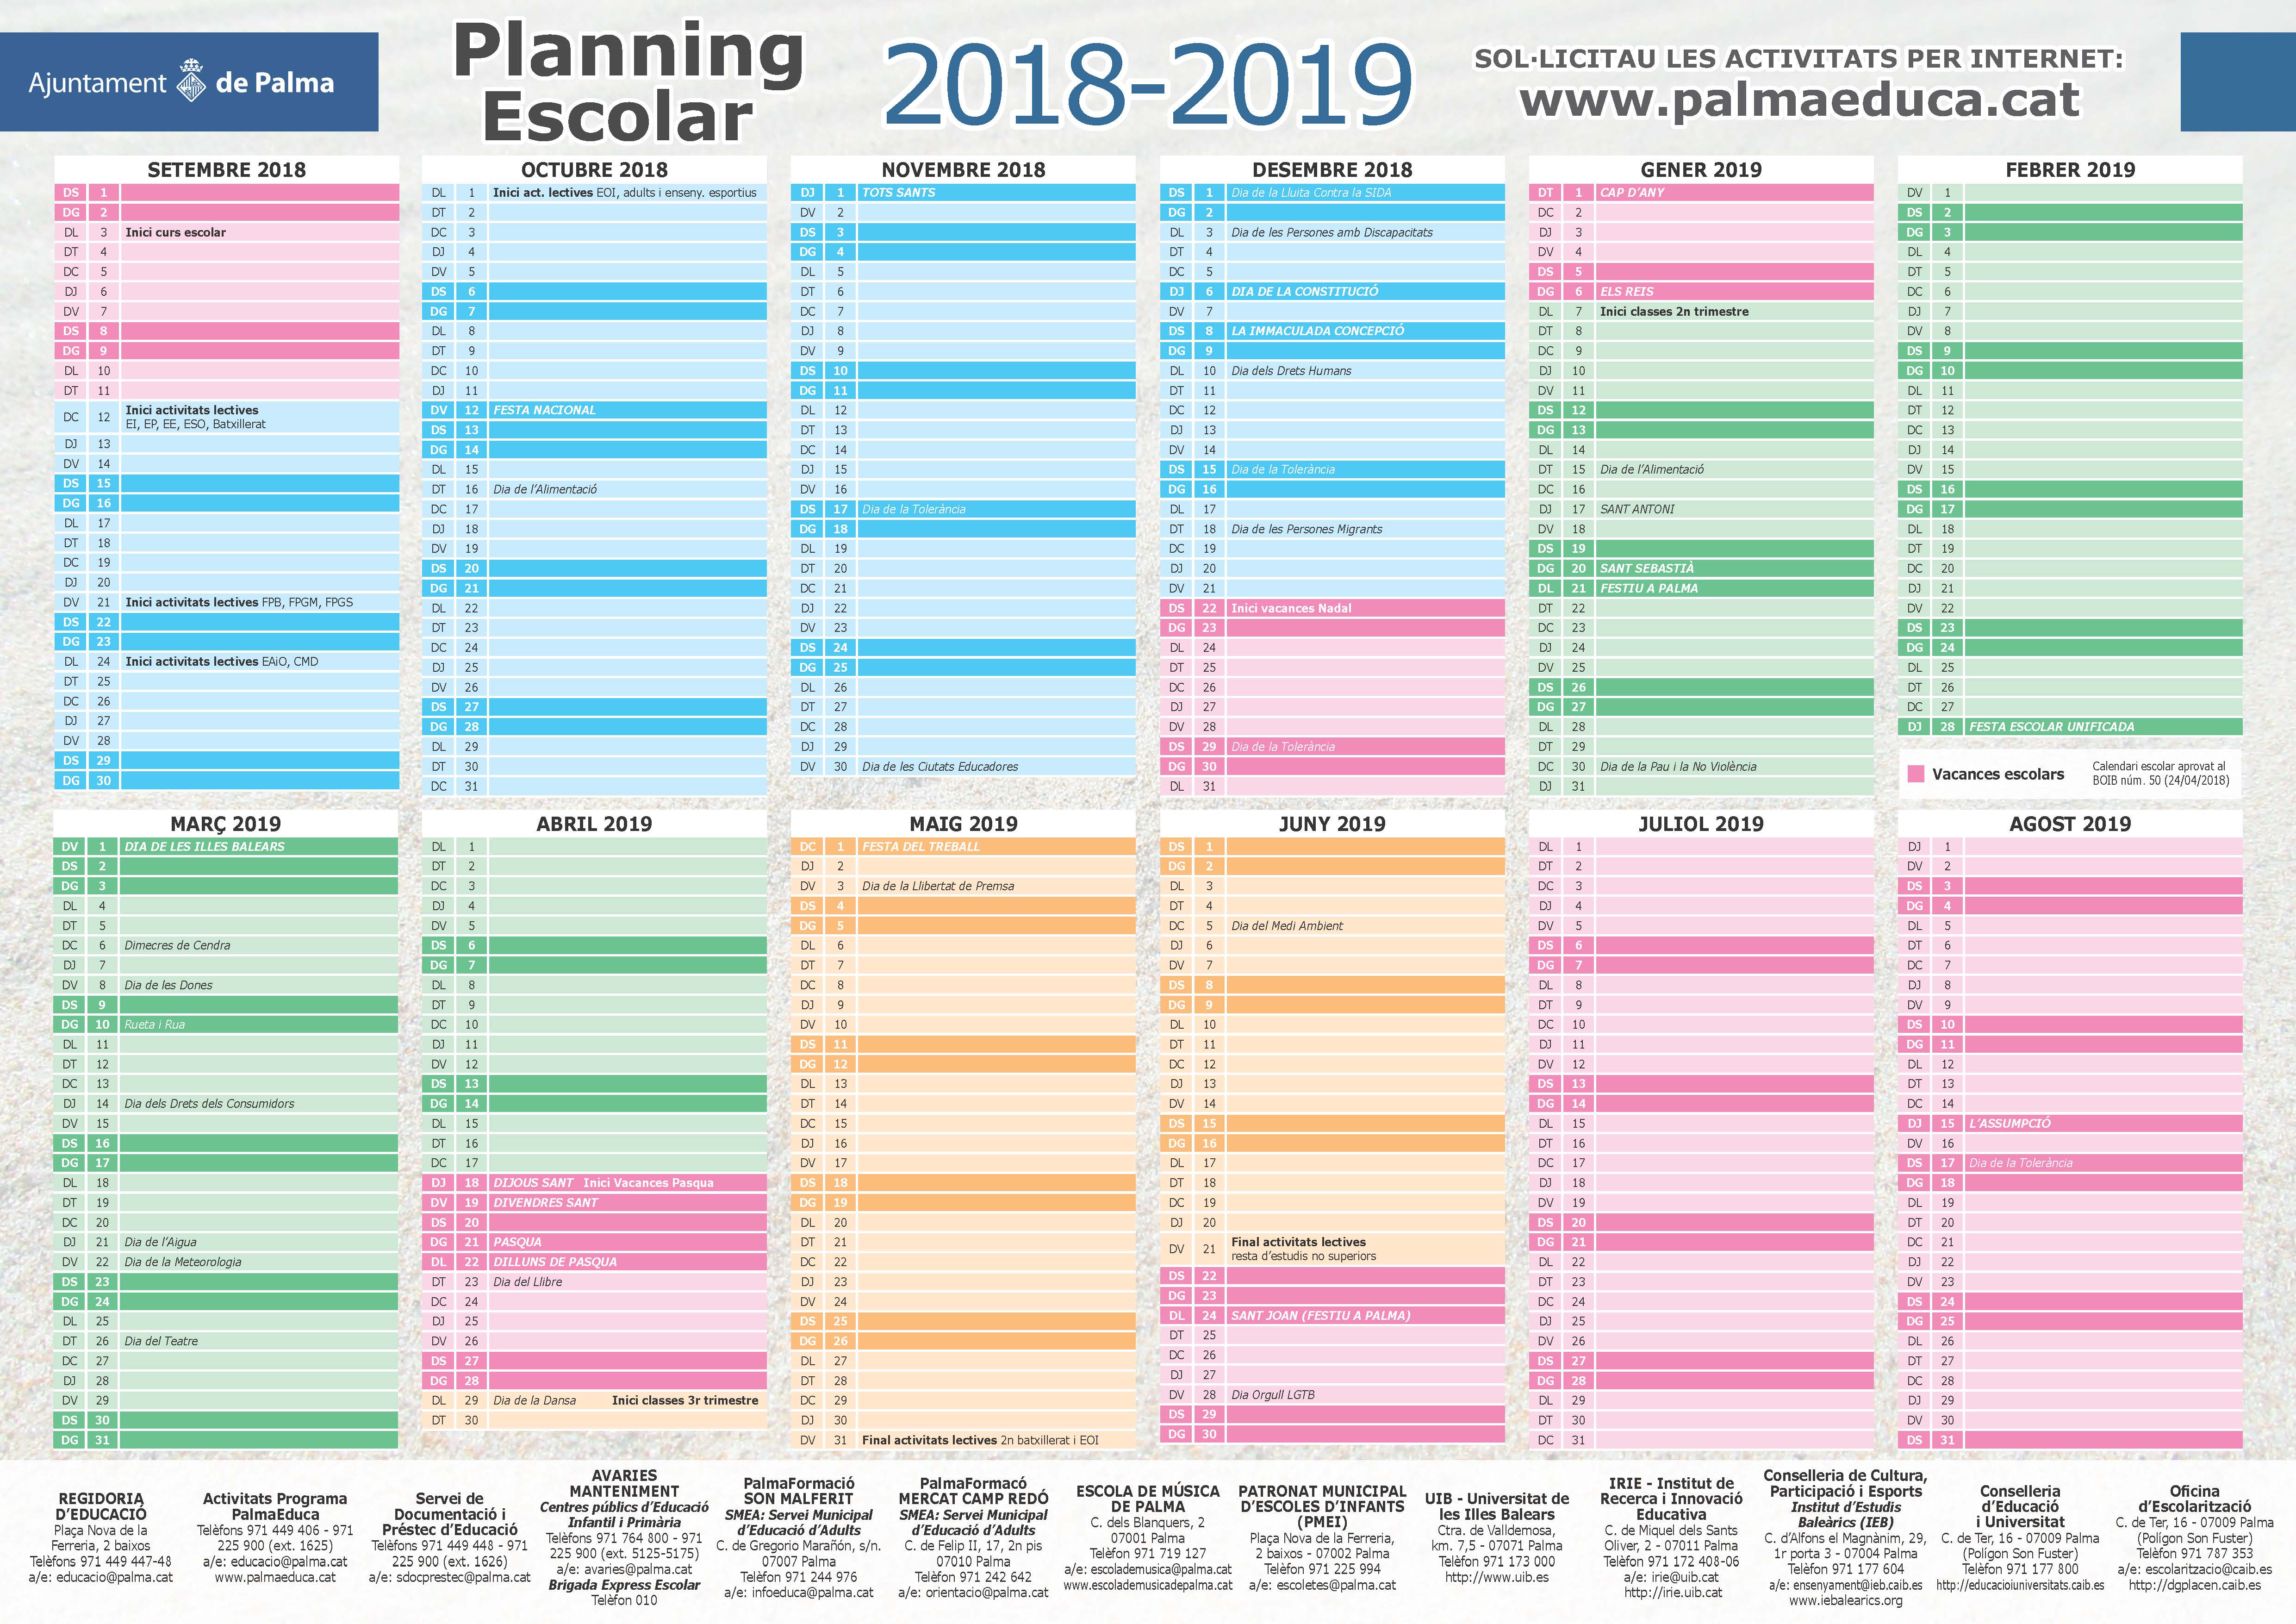 Planning escolar 2018-19